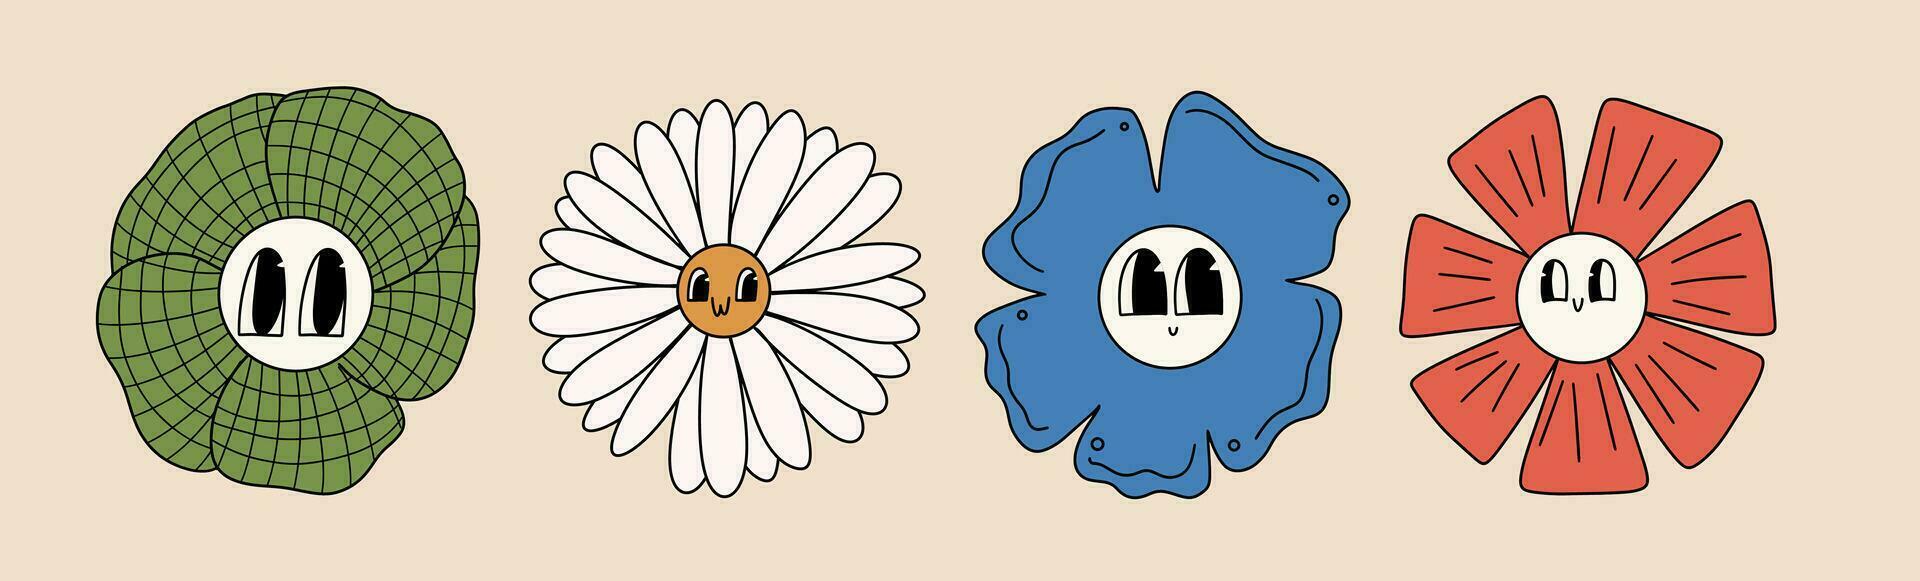 conjunto do desenho animado flores dentro retro estilo, anos 70, anos 90. vetor ilustração